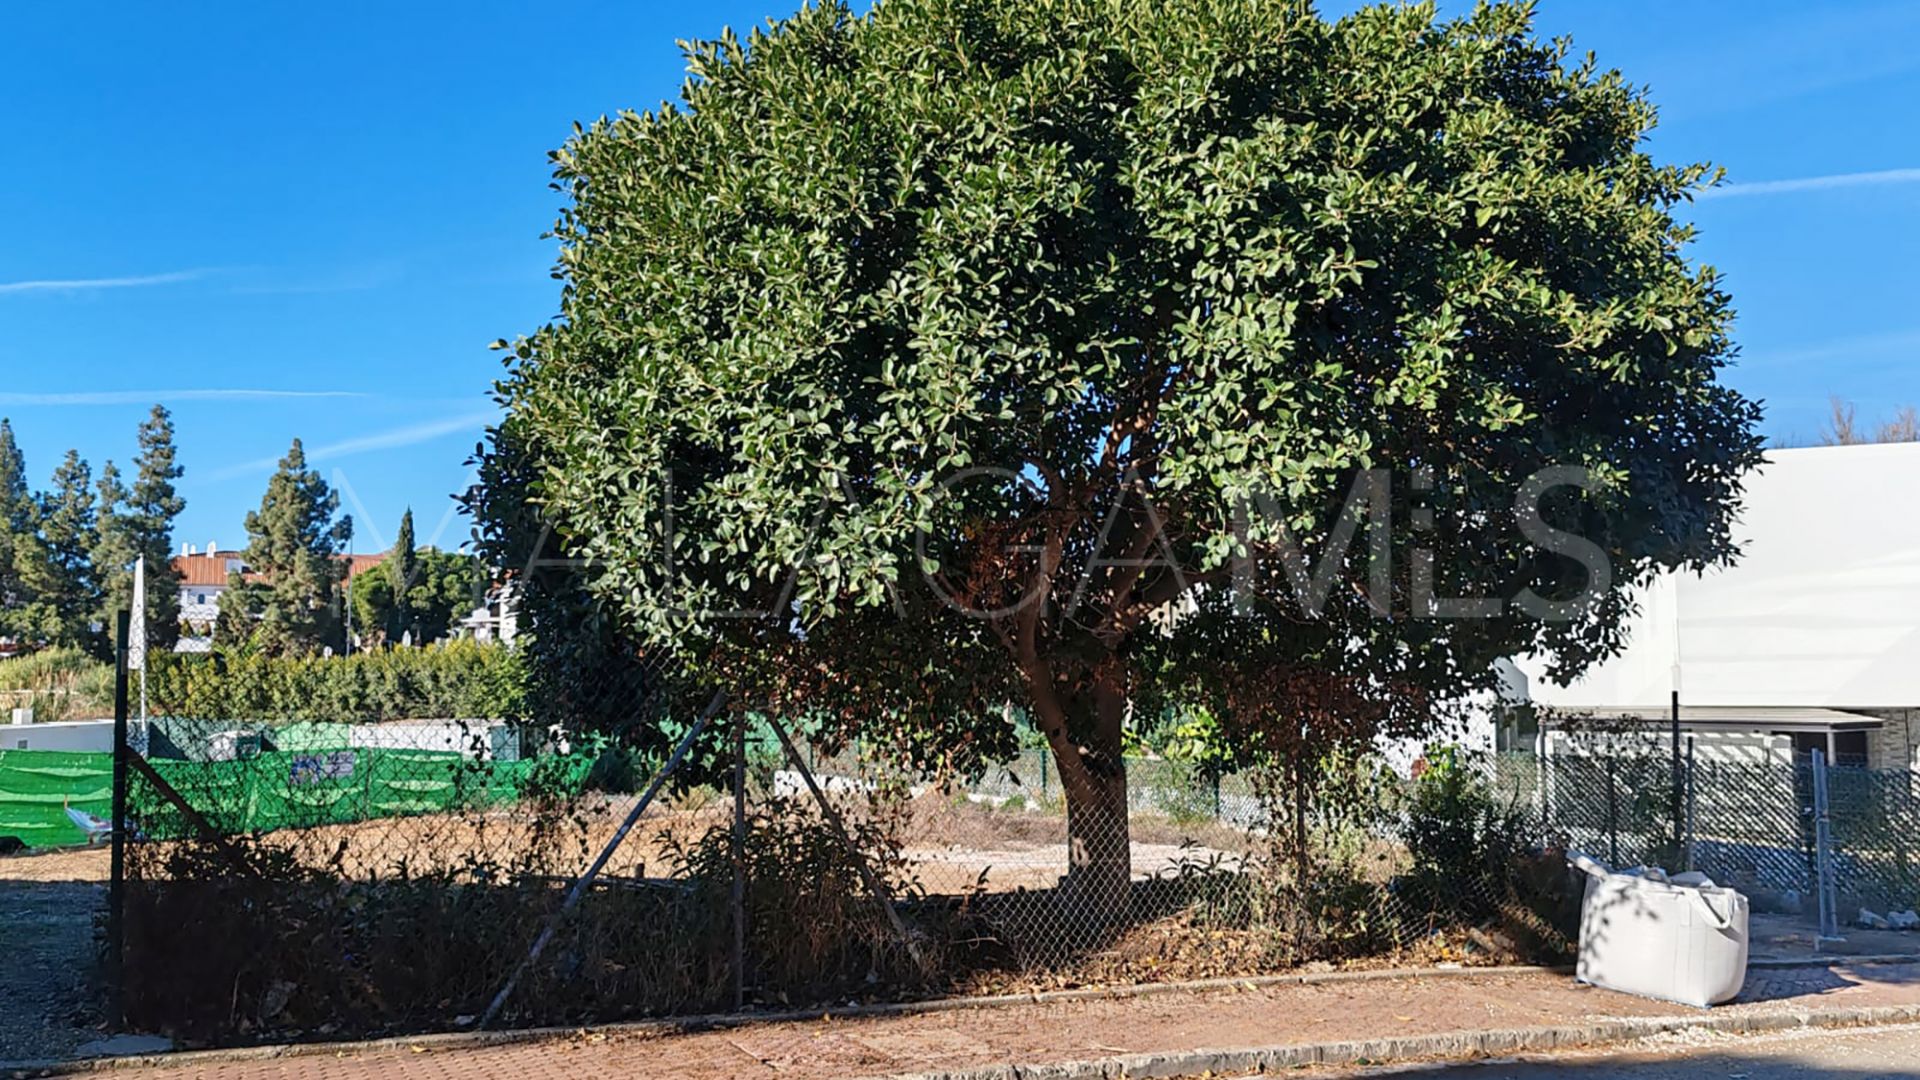 Terrain for sale in Los Altos de Marbella